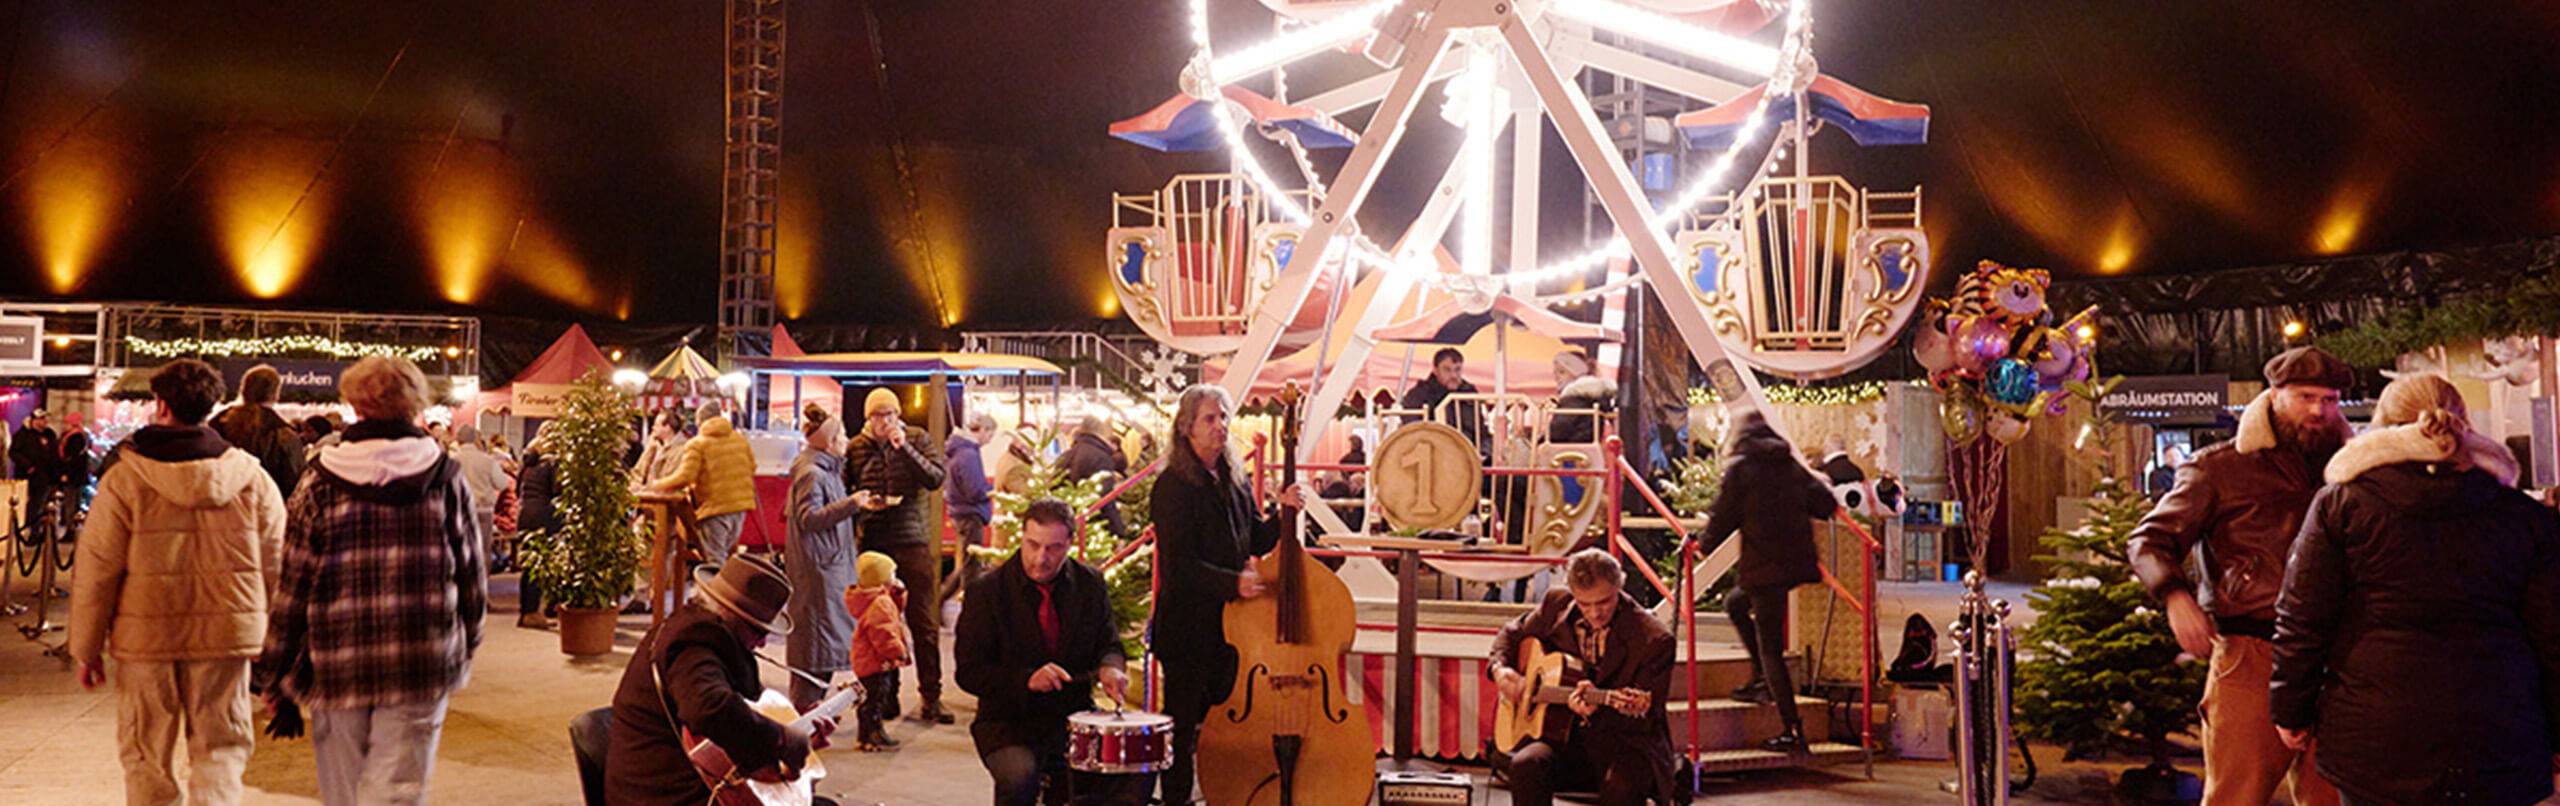 Weihnachtsfeier im Winterspektakel Hamburg mit Live-Musik